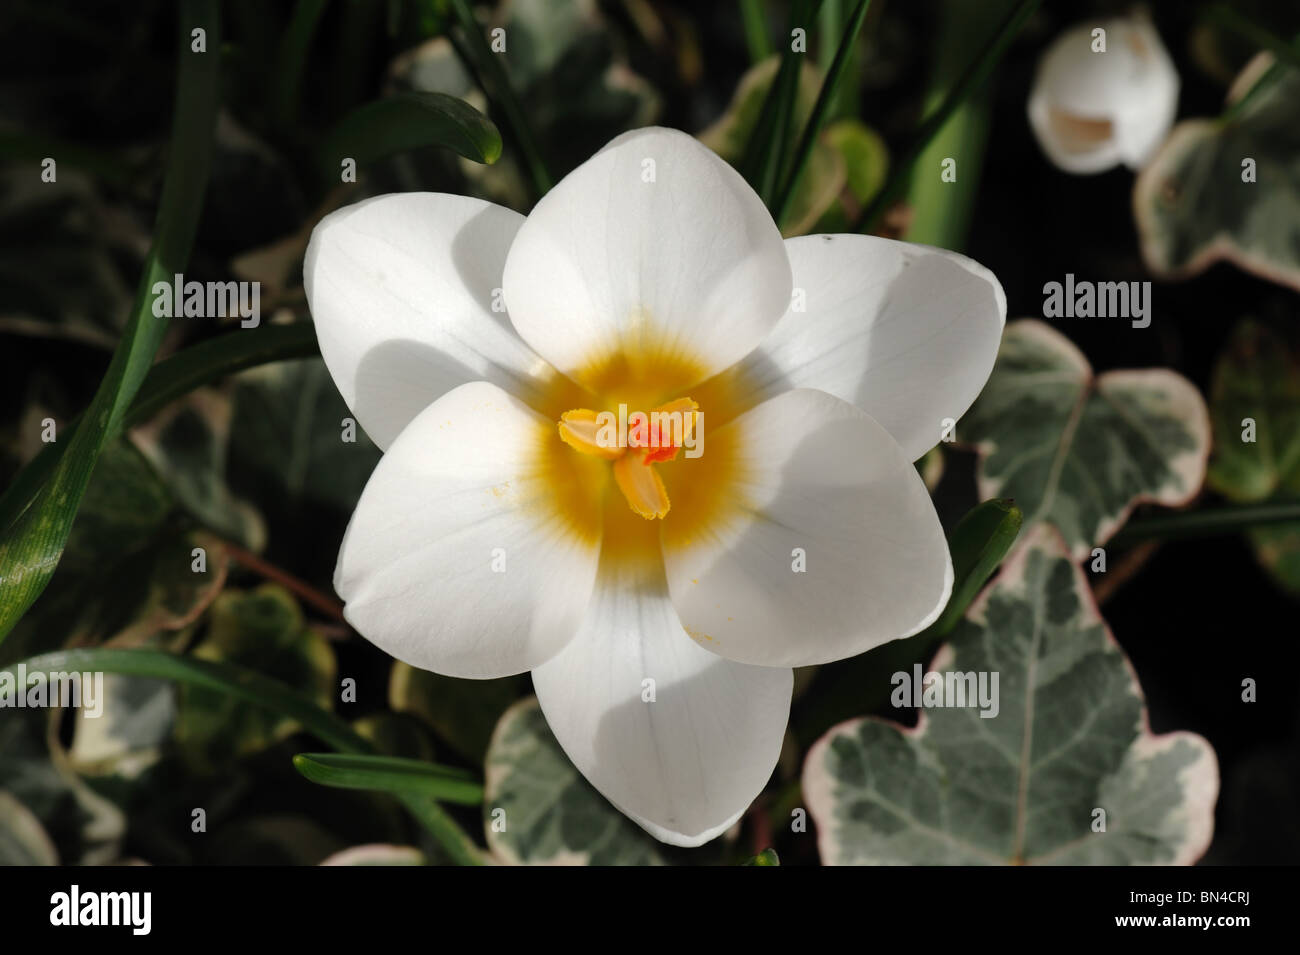 A flower of crocus Ard Schenk in spring Stock Photo